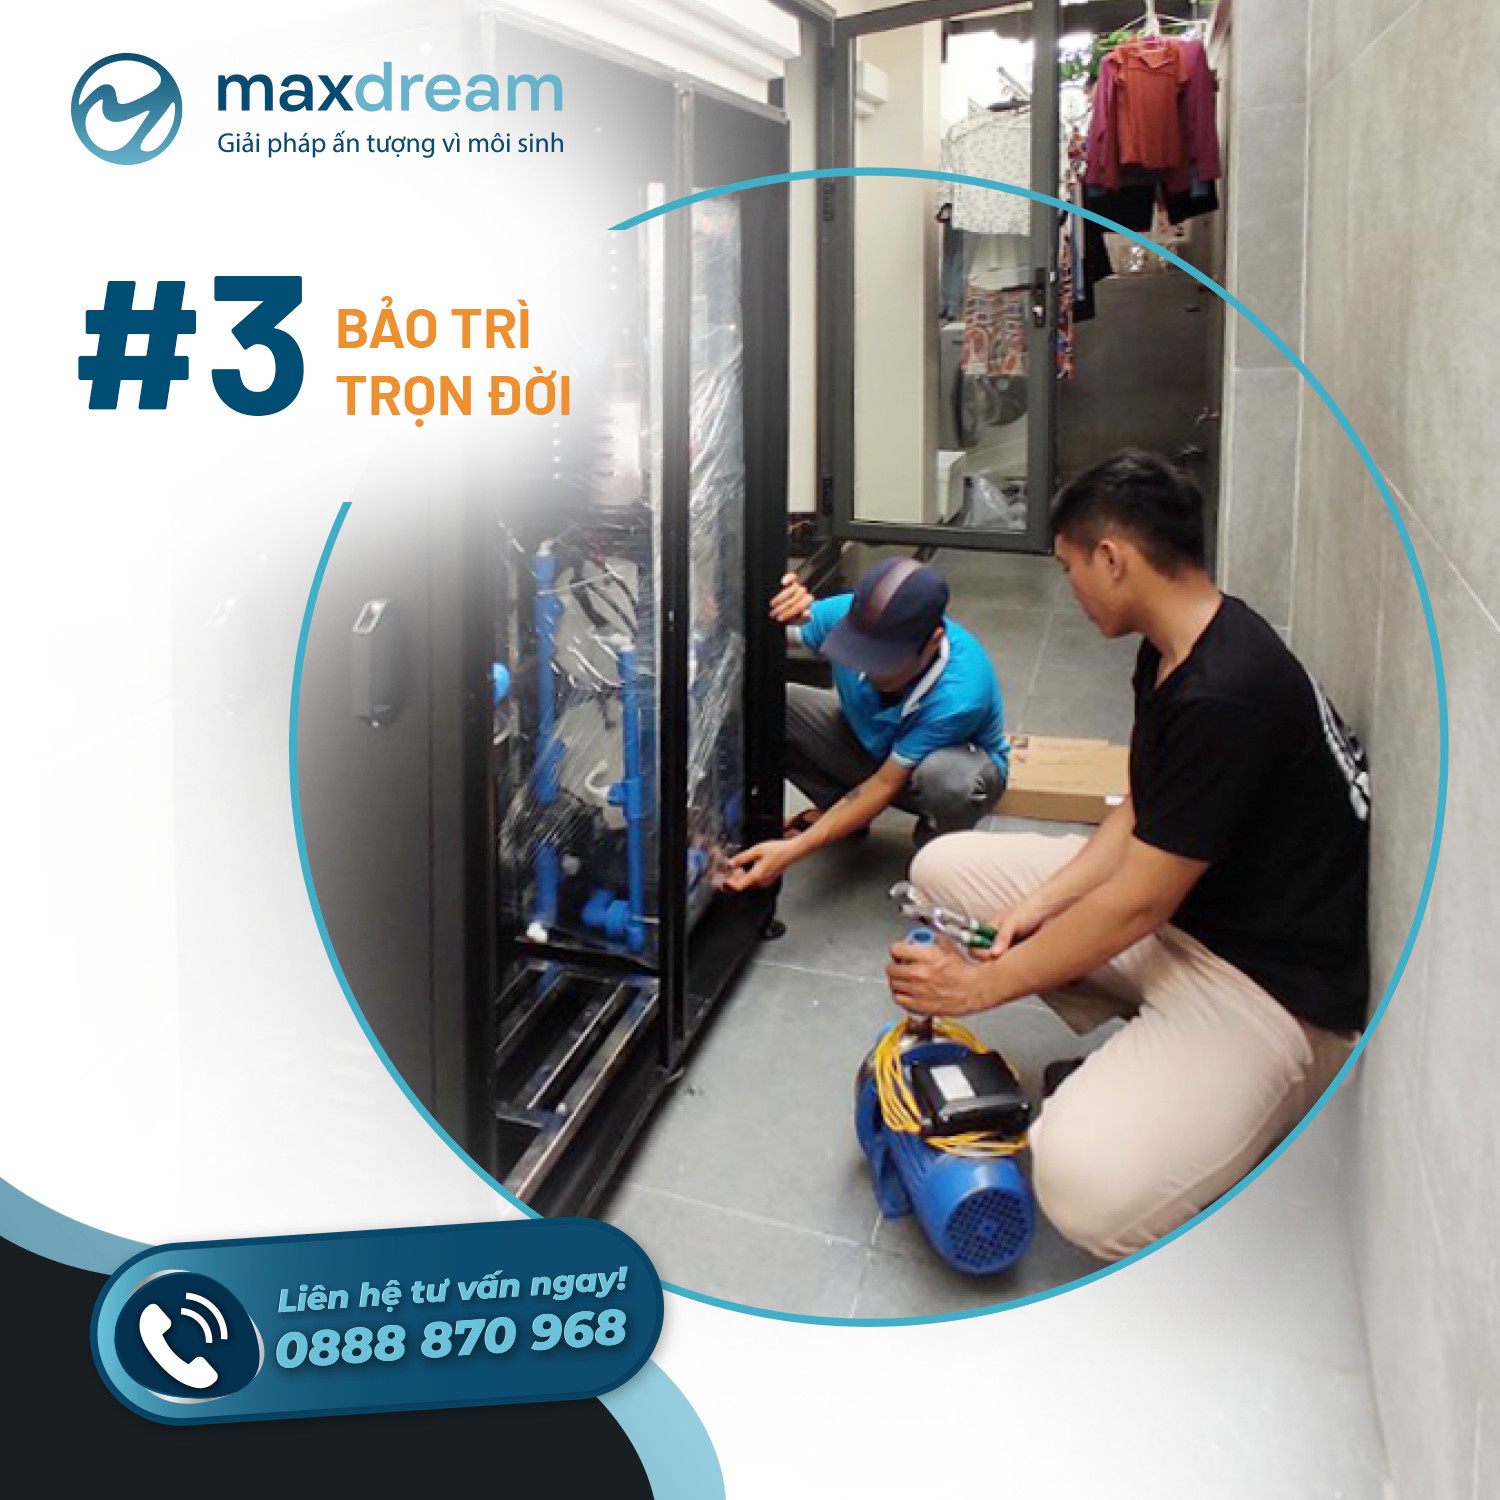 Hình ảnh kỹ thuật đang lắp đặt máy lọc tổng Maxdream tại nhà khách hàng